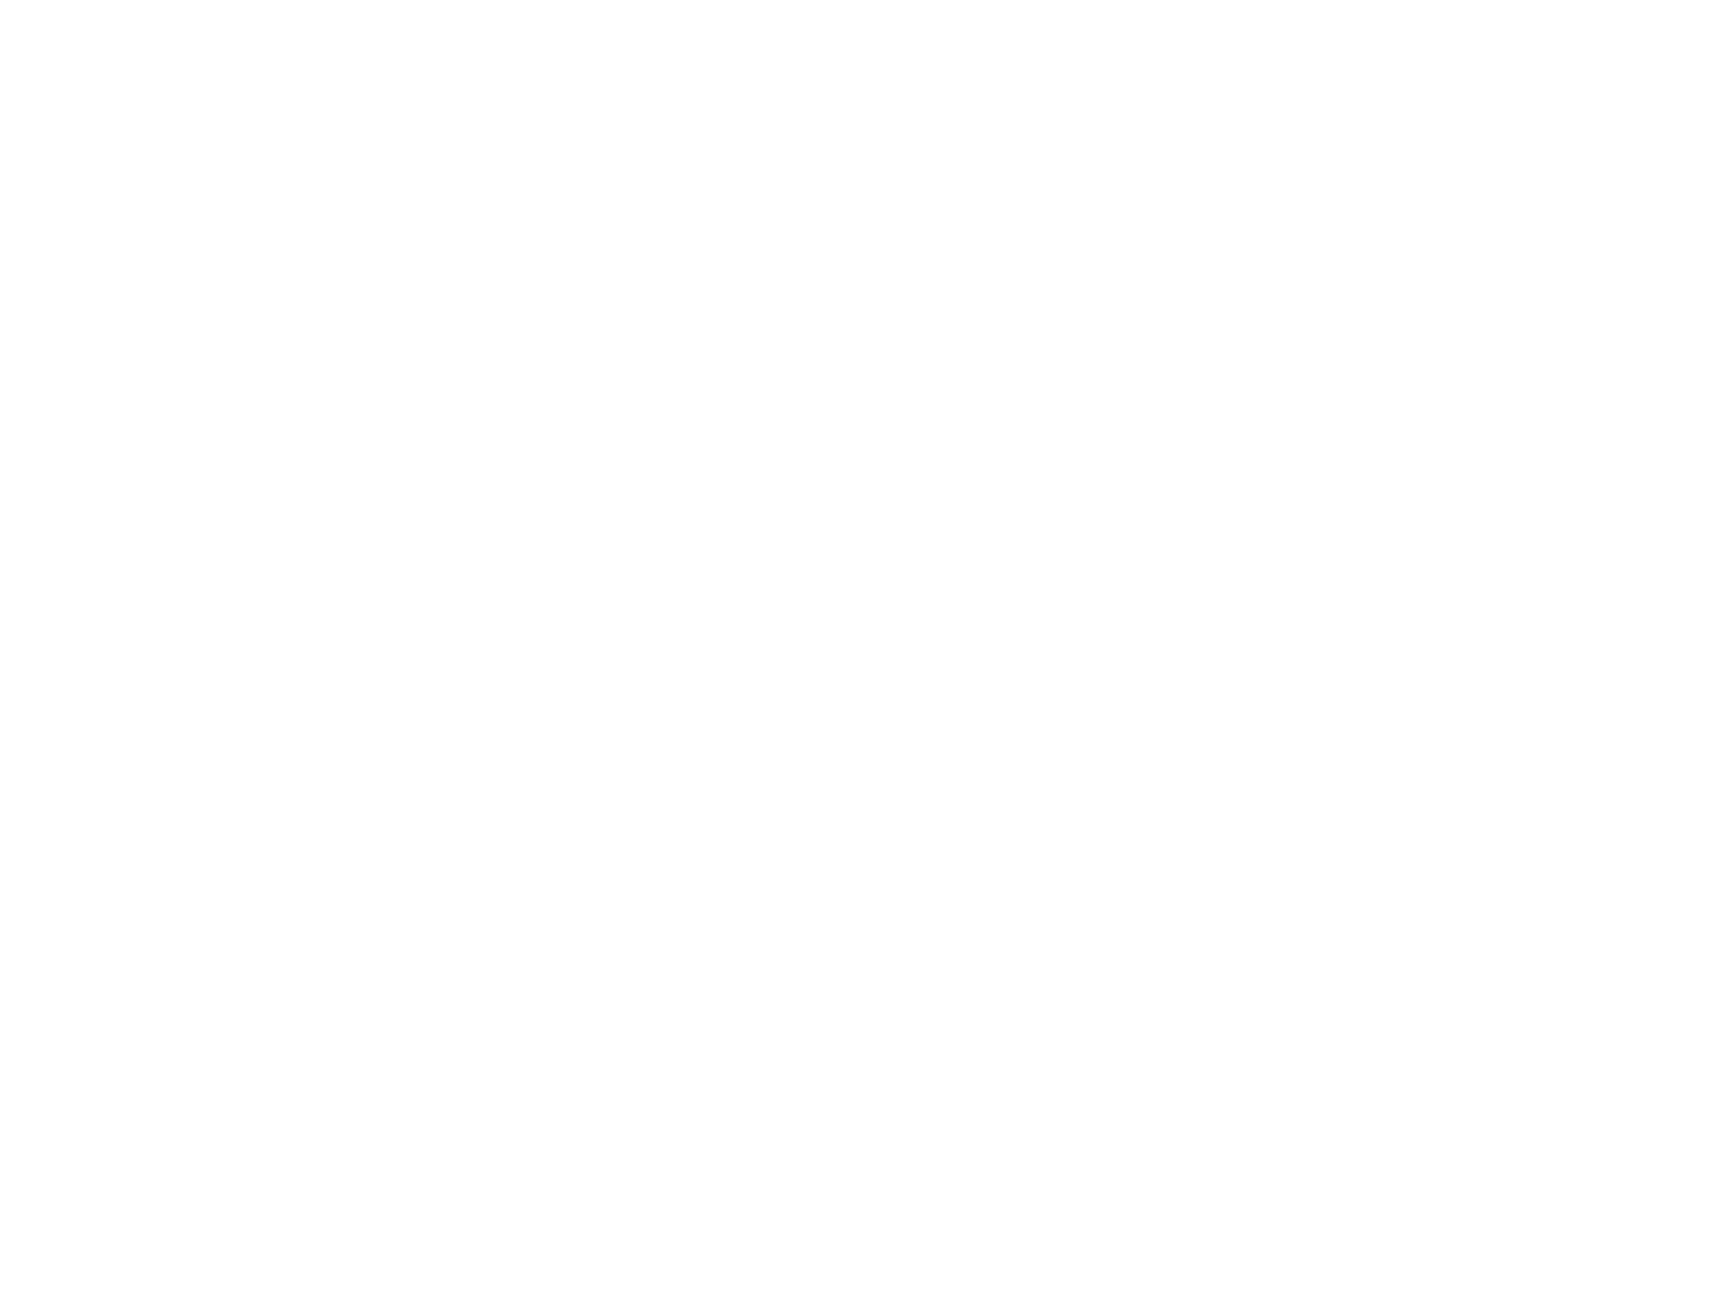 Buffalo of Black Journalists – Buffalo Association of Black